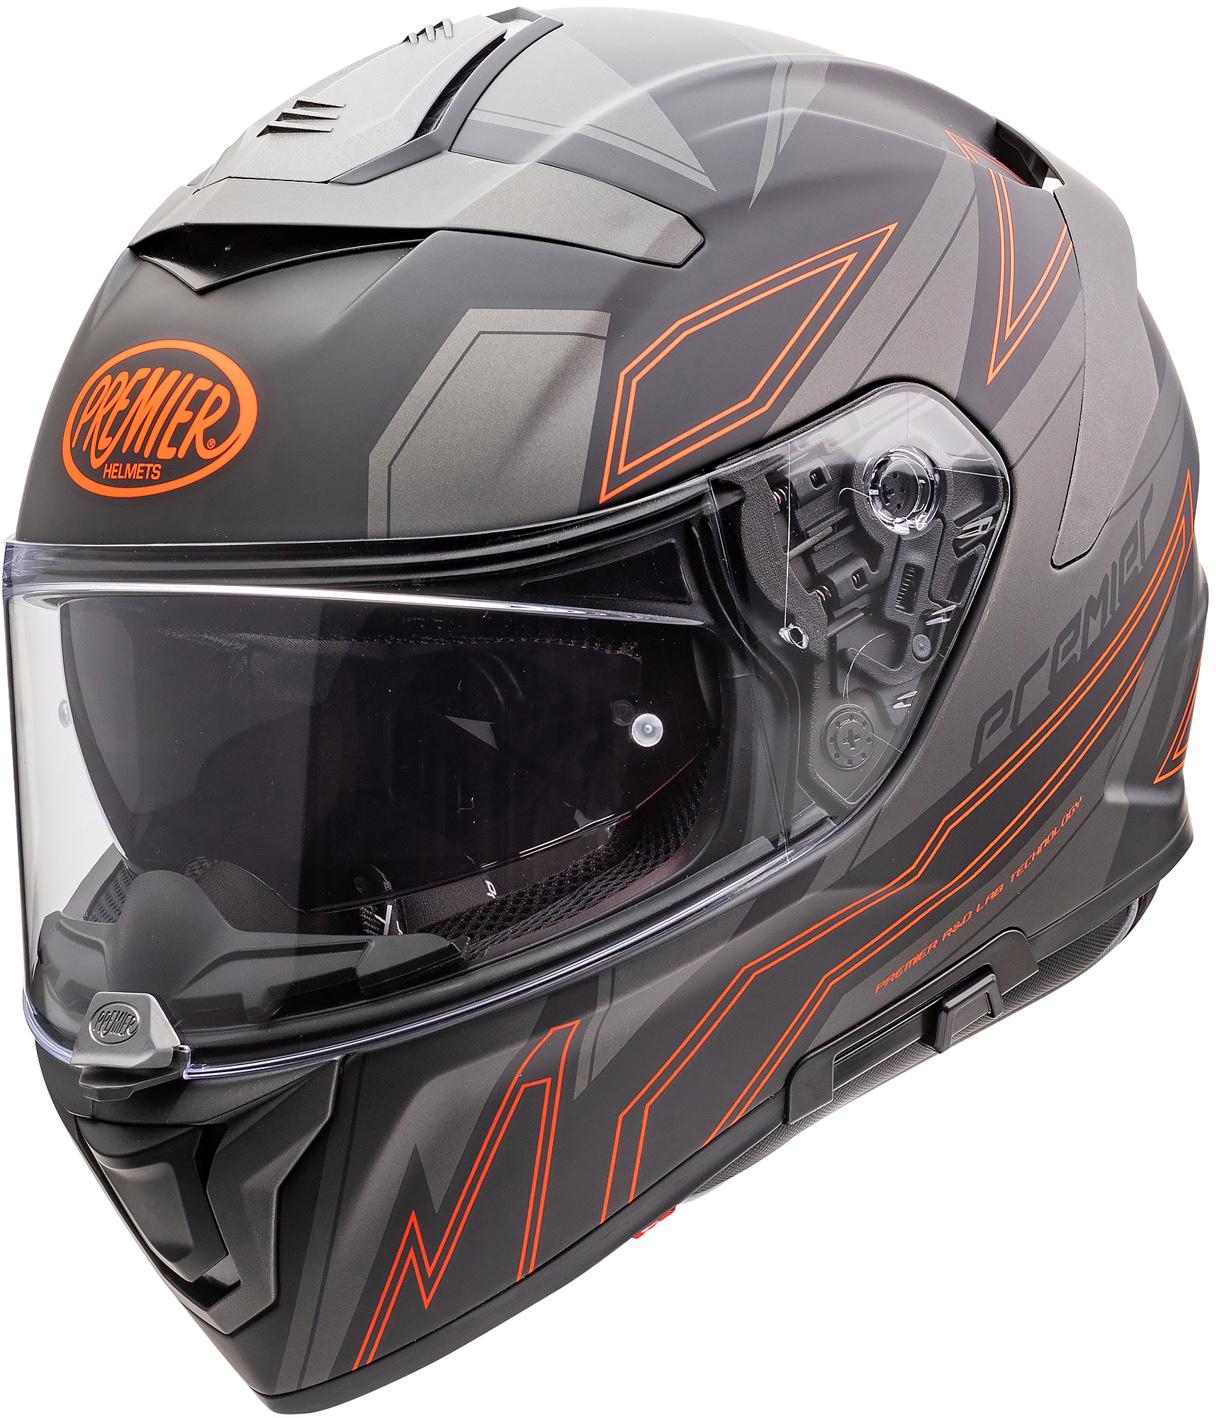 Premier Devil El Full Face Motorcycle Helmet - Black/Orange, Xl